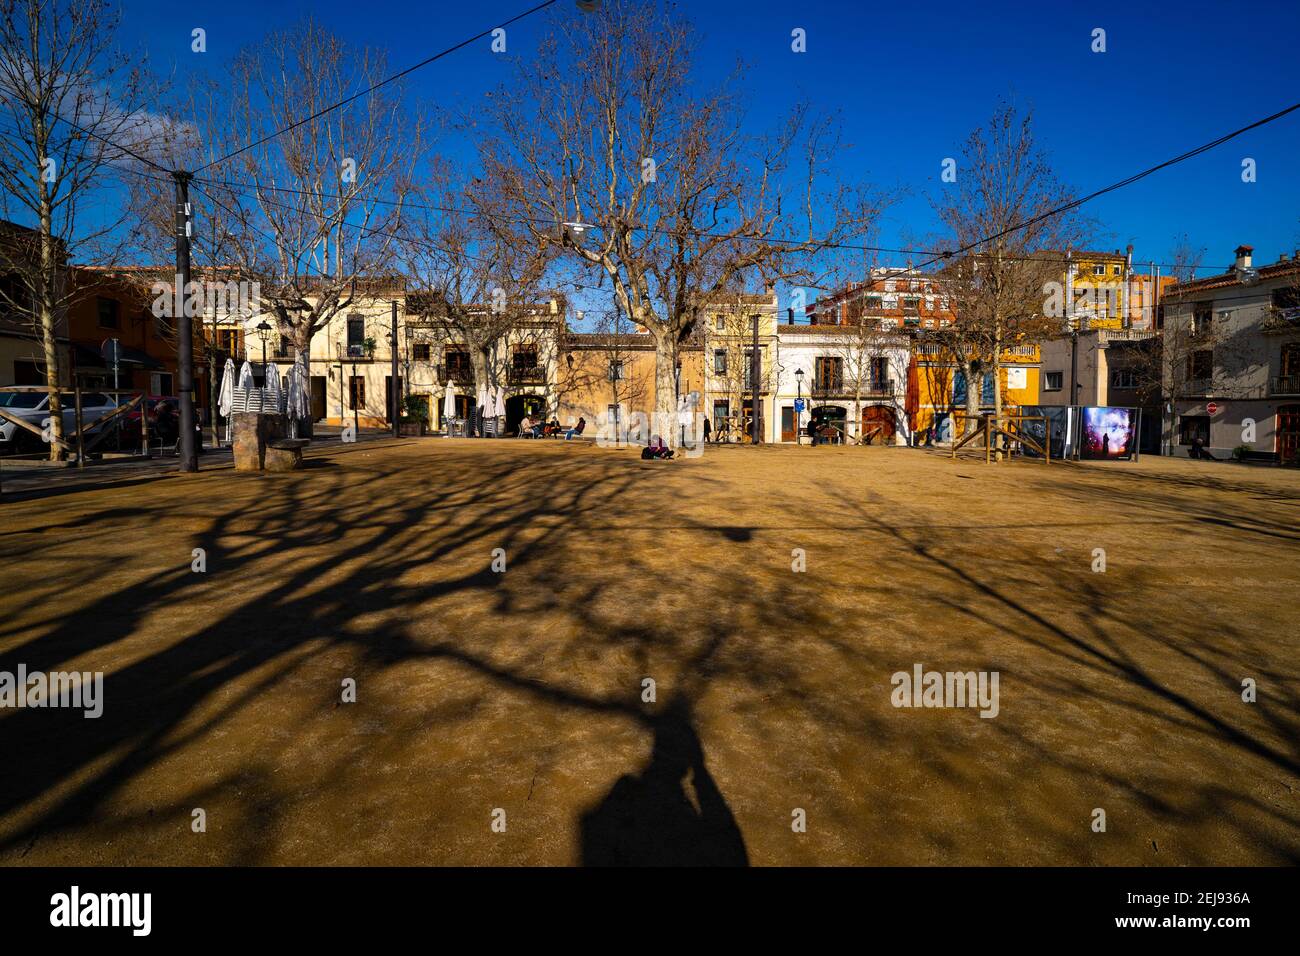 Vide ity Square pendant la crise Covid 19, janvier 2021. Placa Barcelona, Sant Cugat del Valles, Barcelone, Catalogne, Espagne Banque D'Images